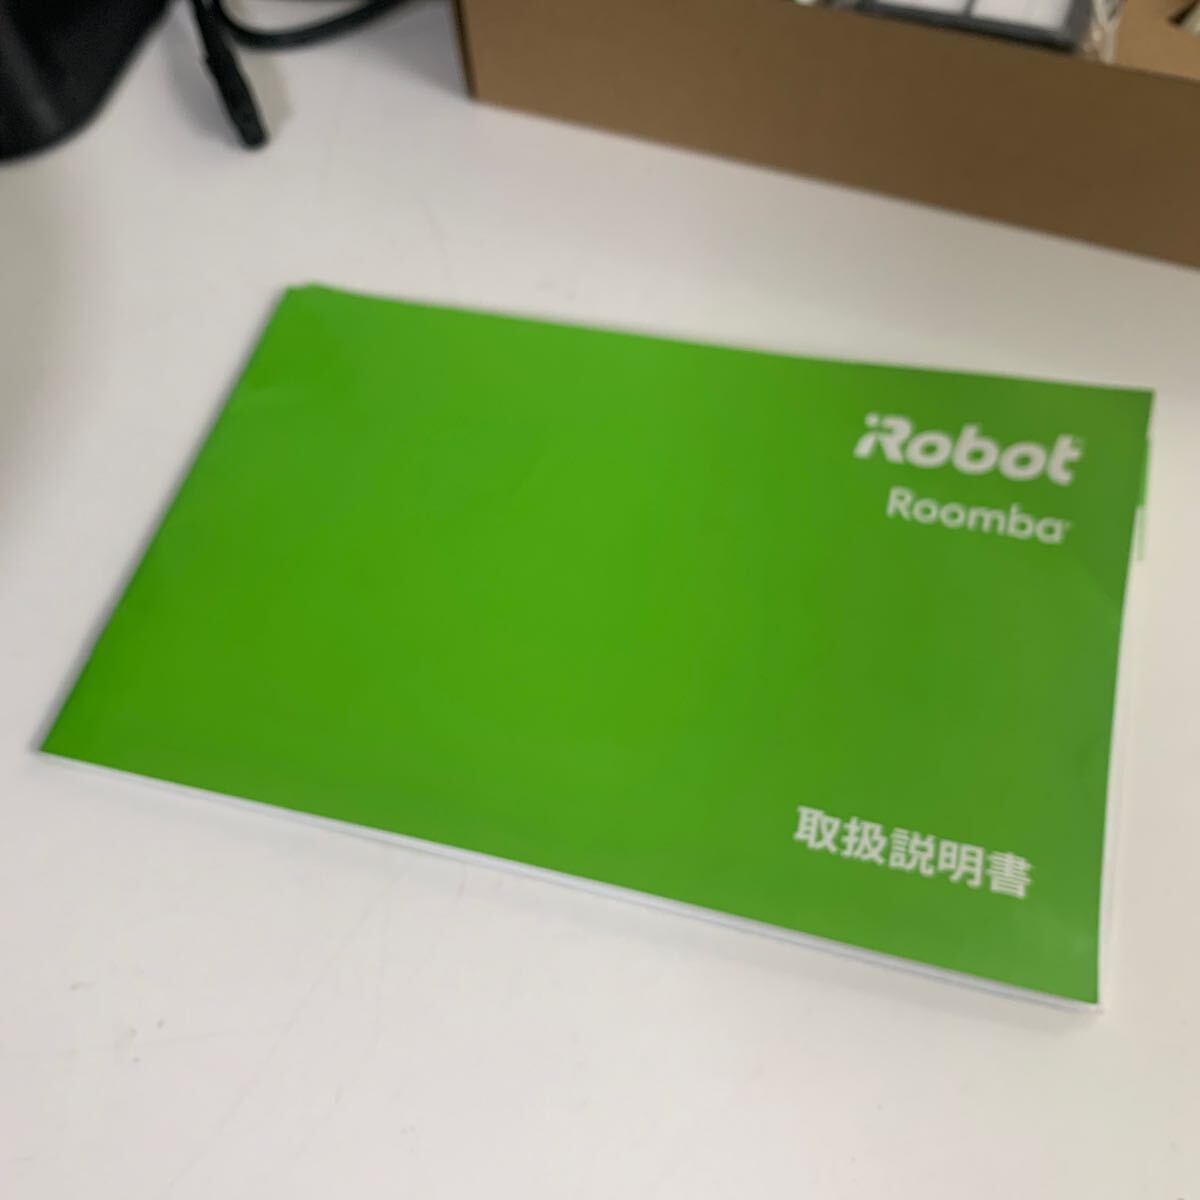 iRobot I робот Roomba 980 roomba пылесос робот пылесос инструкция с коробкой рабочее состояние подтверждено 